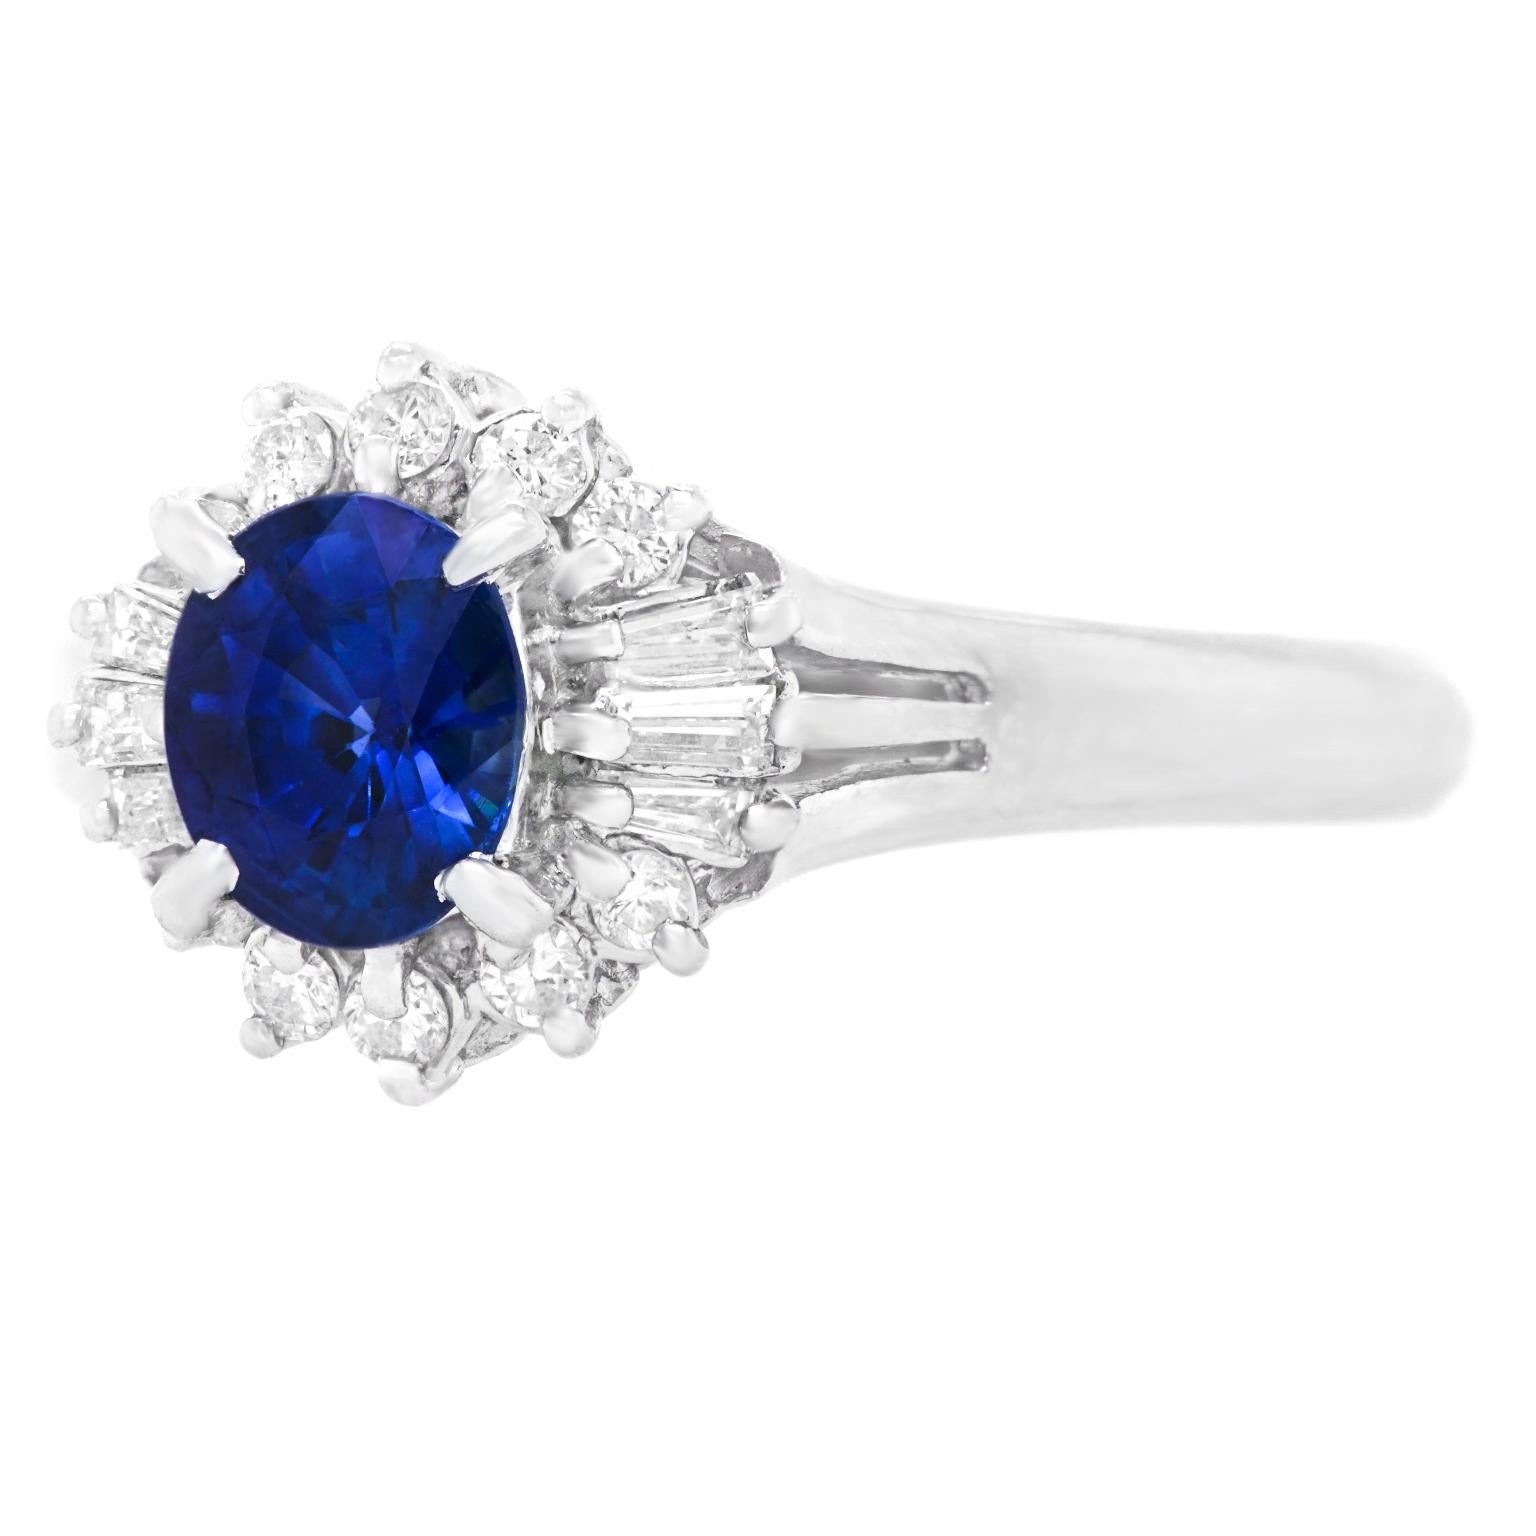 Oval Cut Sapphire & Diamond-Set Platinum Ring, c1960s, American